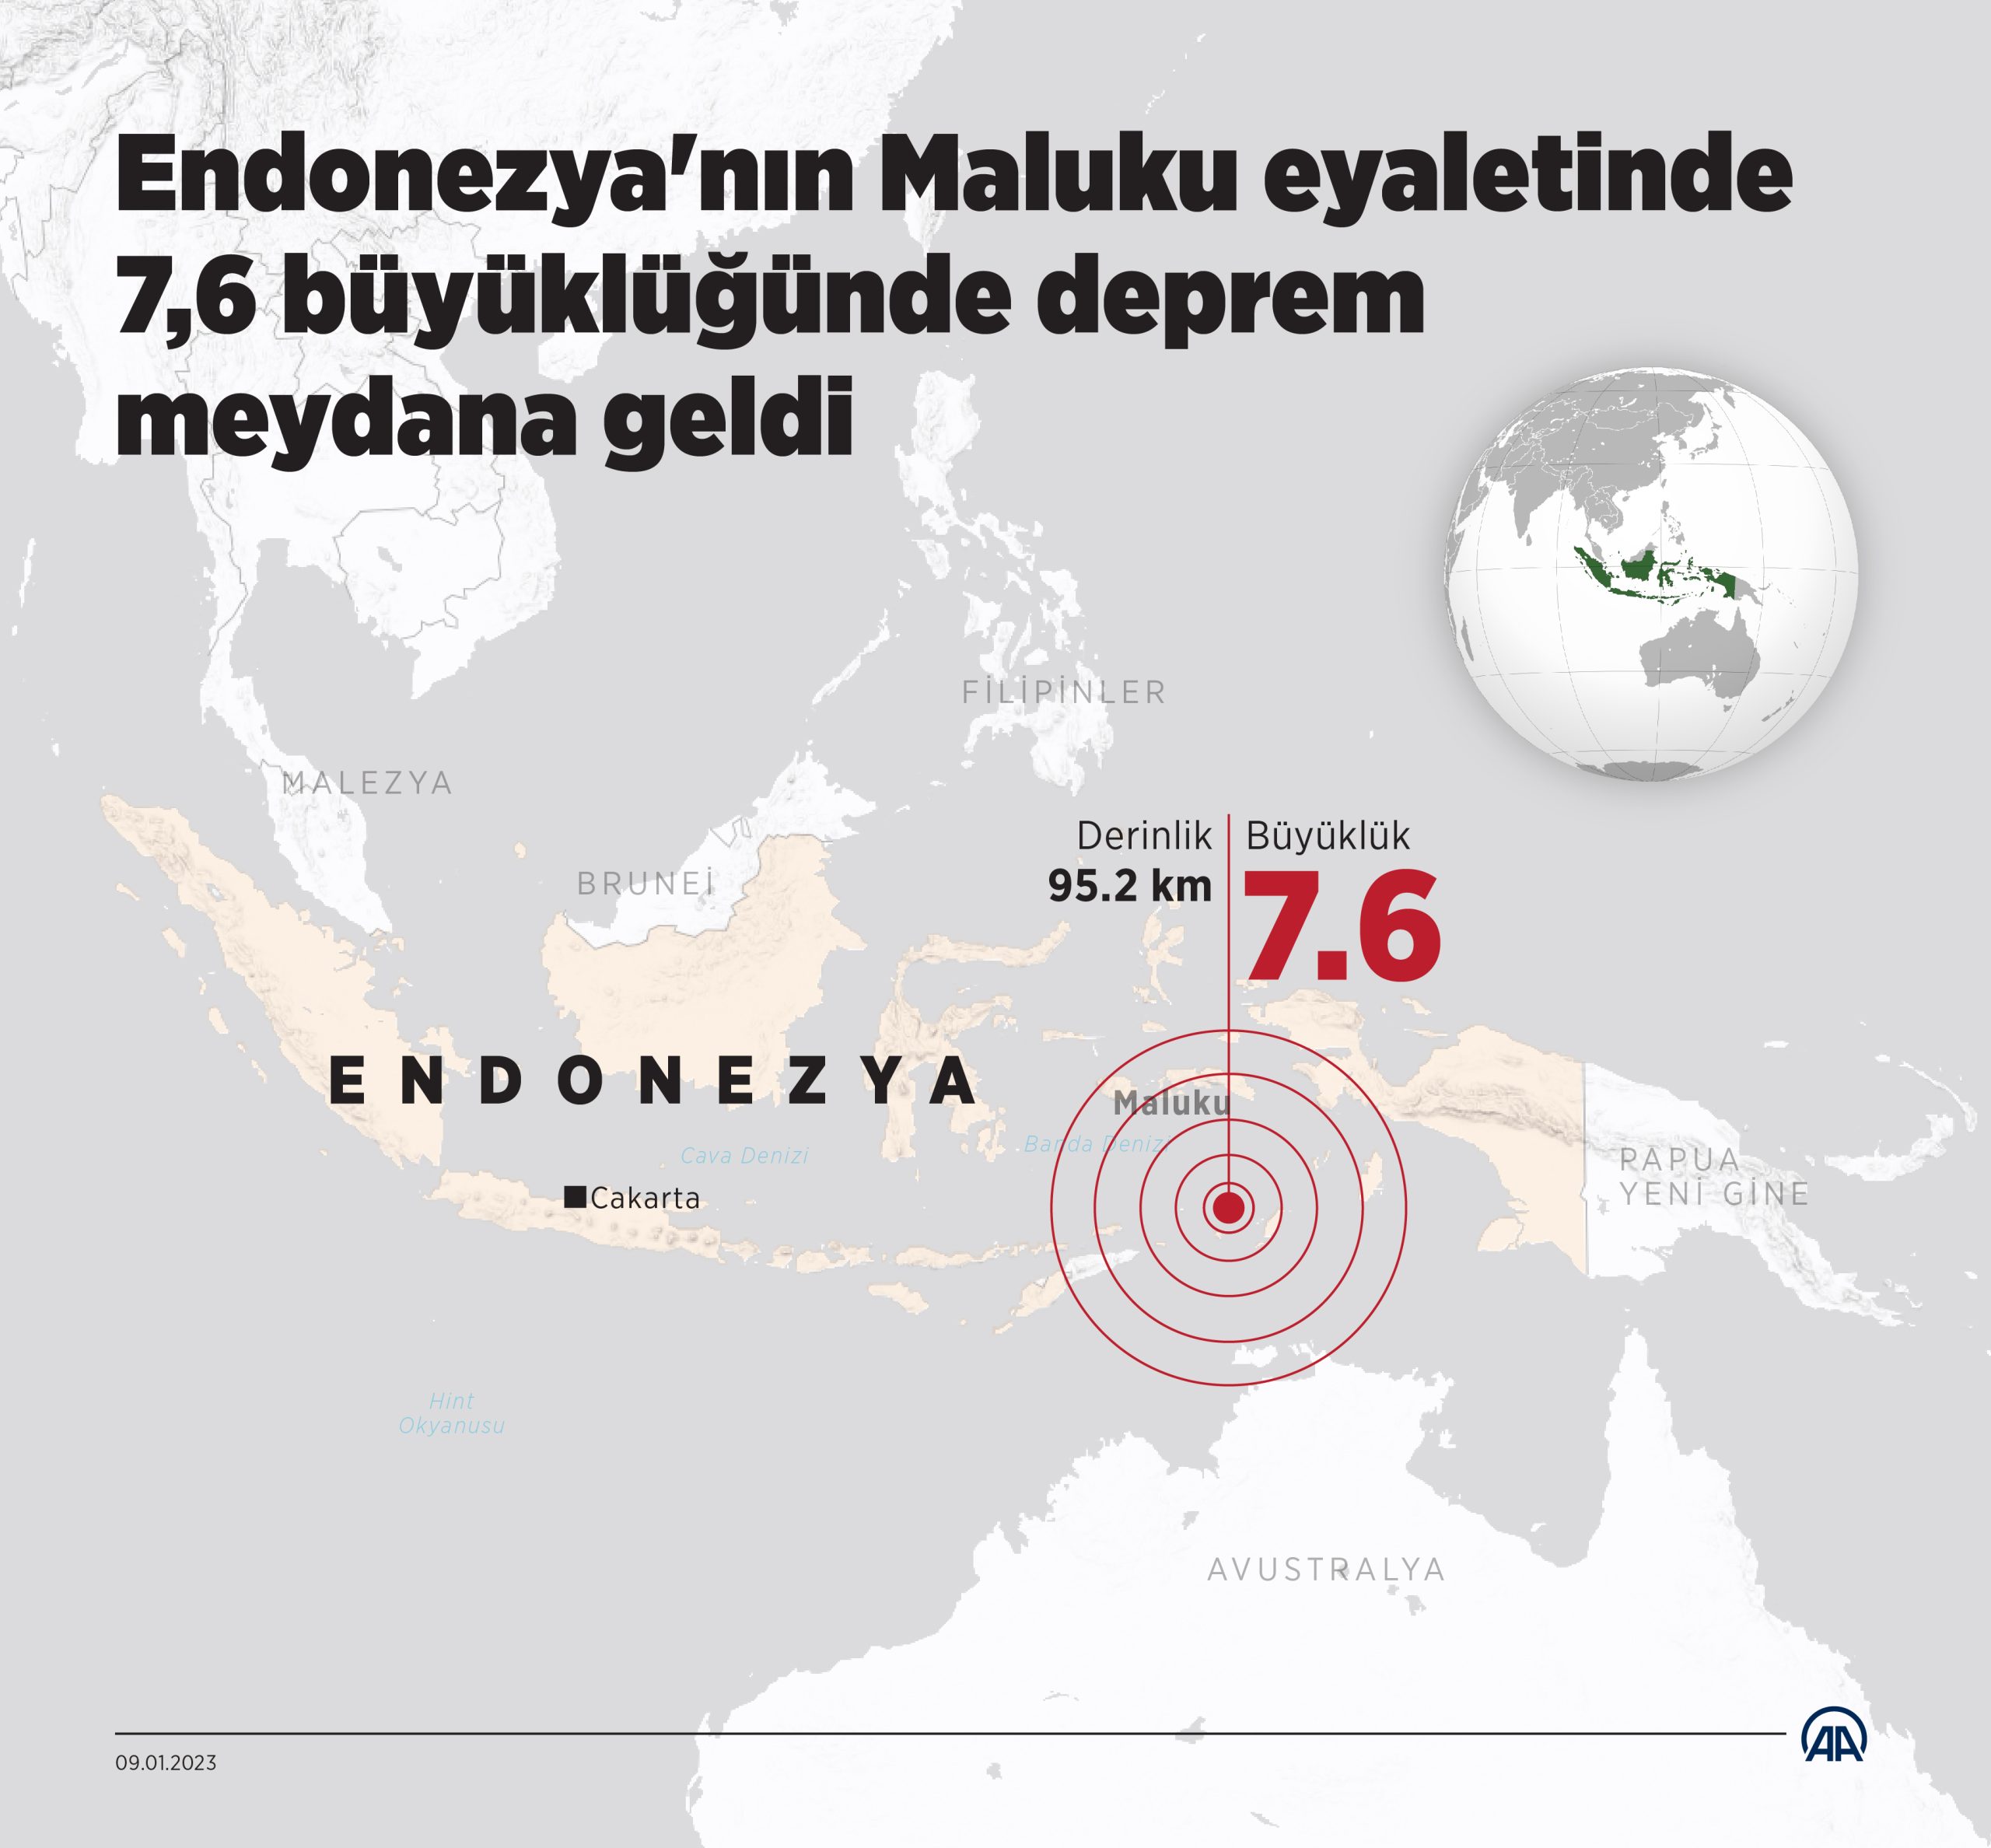 Endonezya’nın Maluku eyaletinde 7,6 büyüklüğünde deprem meydana geldi